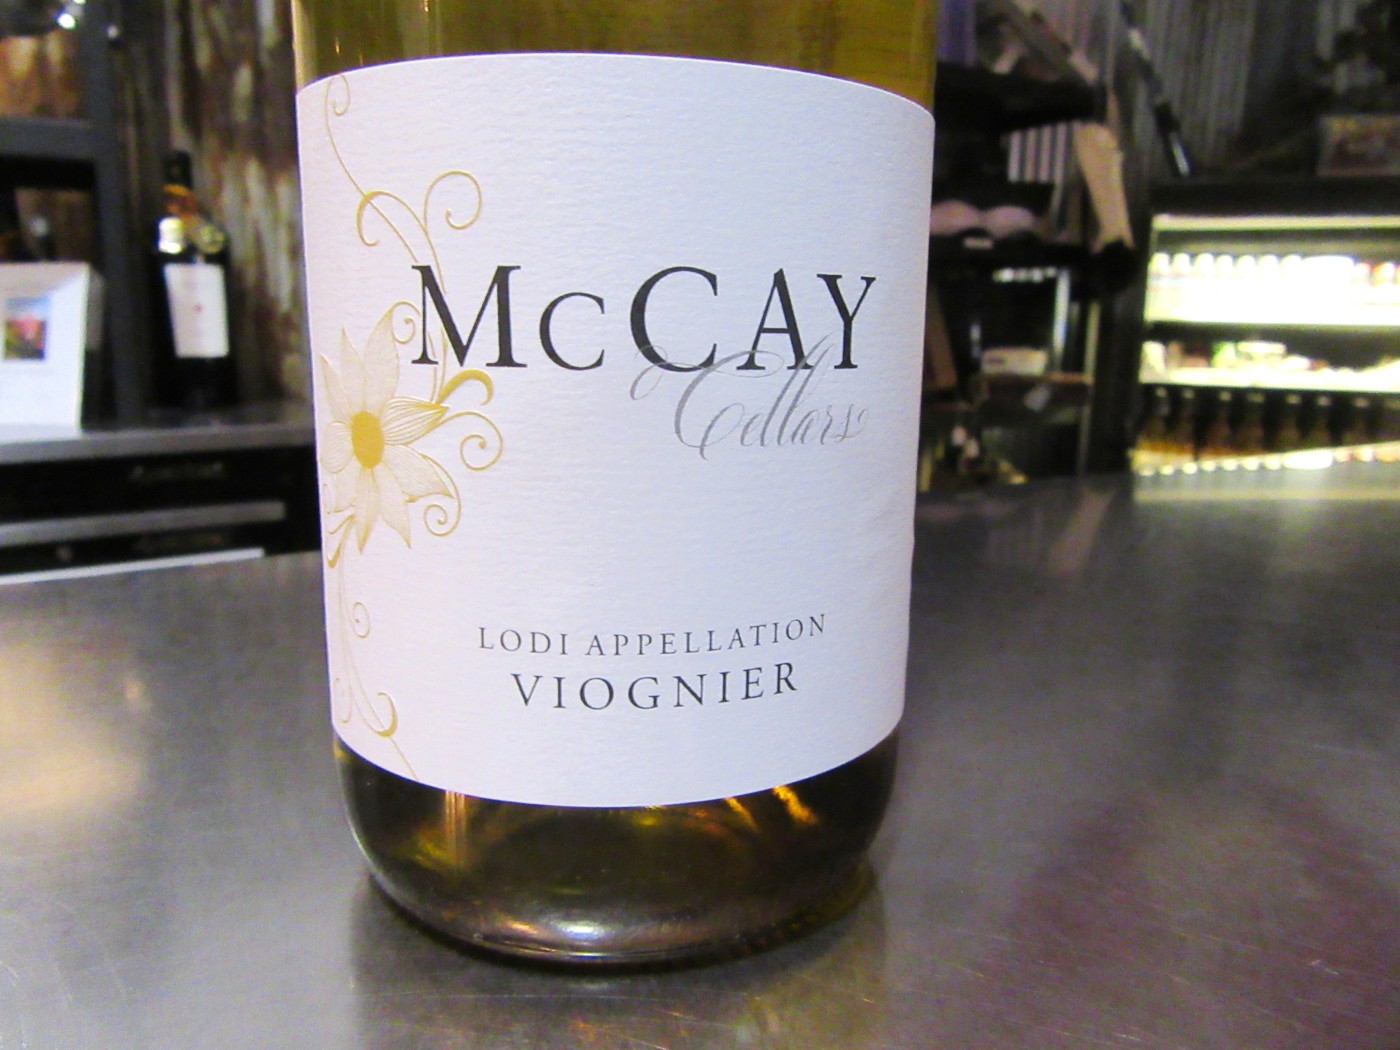 McCay Cellars, Viognier 2014, Lodi, California, Wine Casual